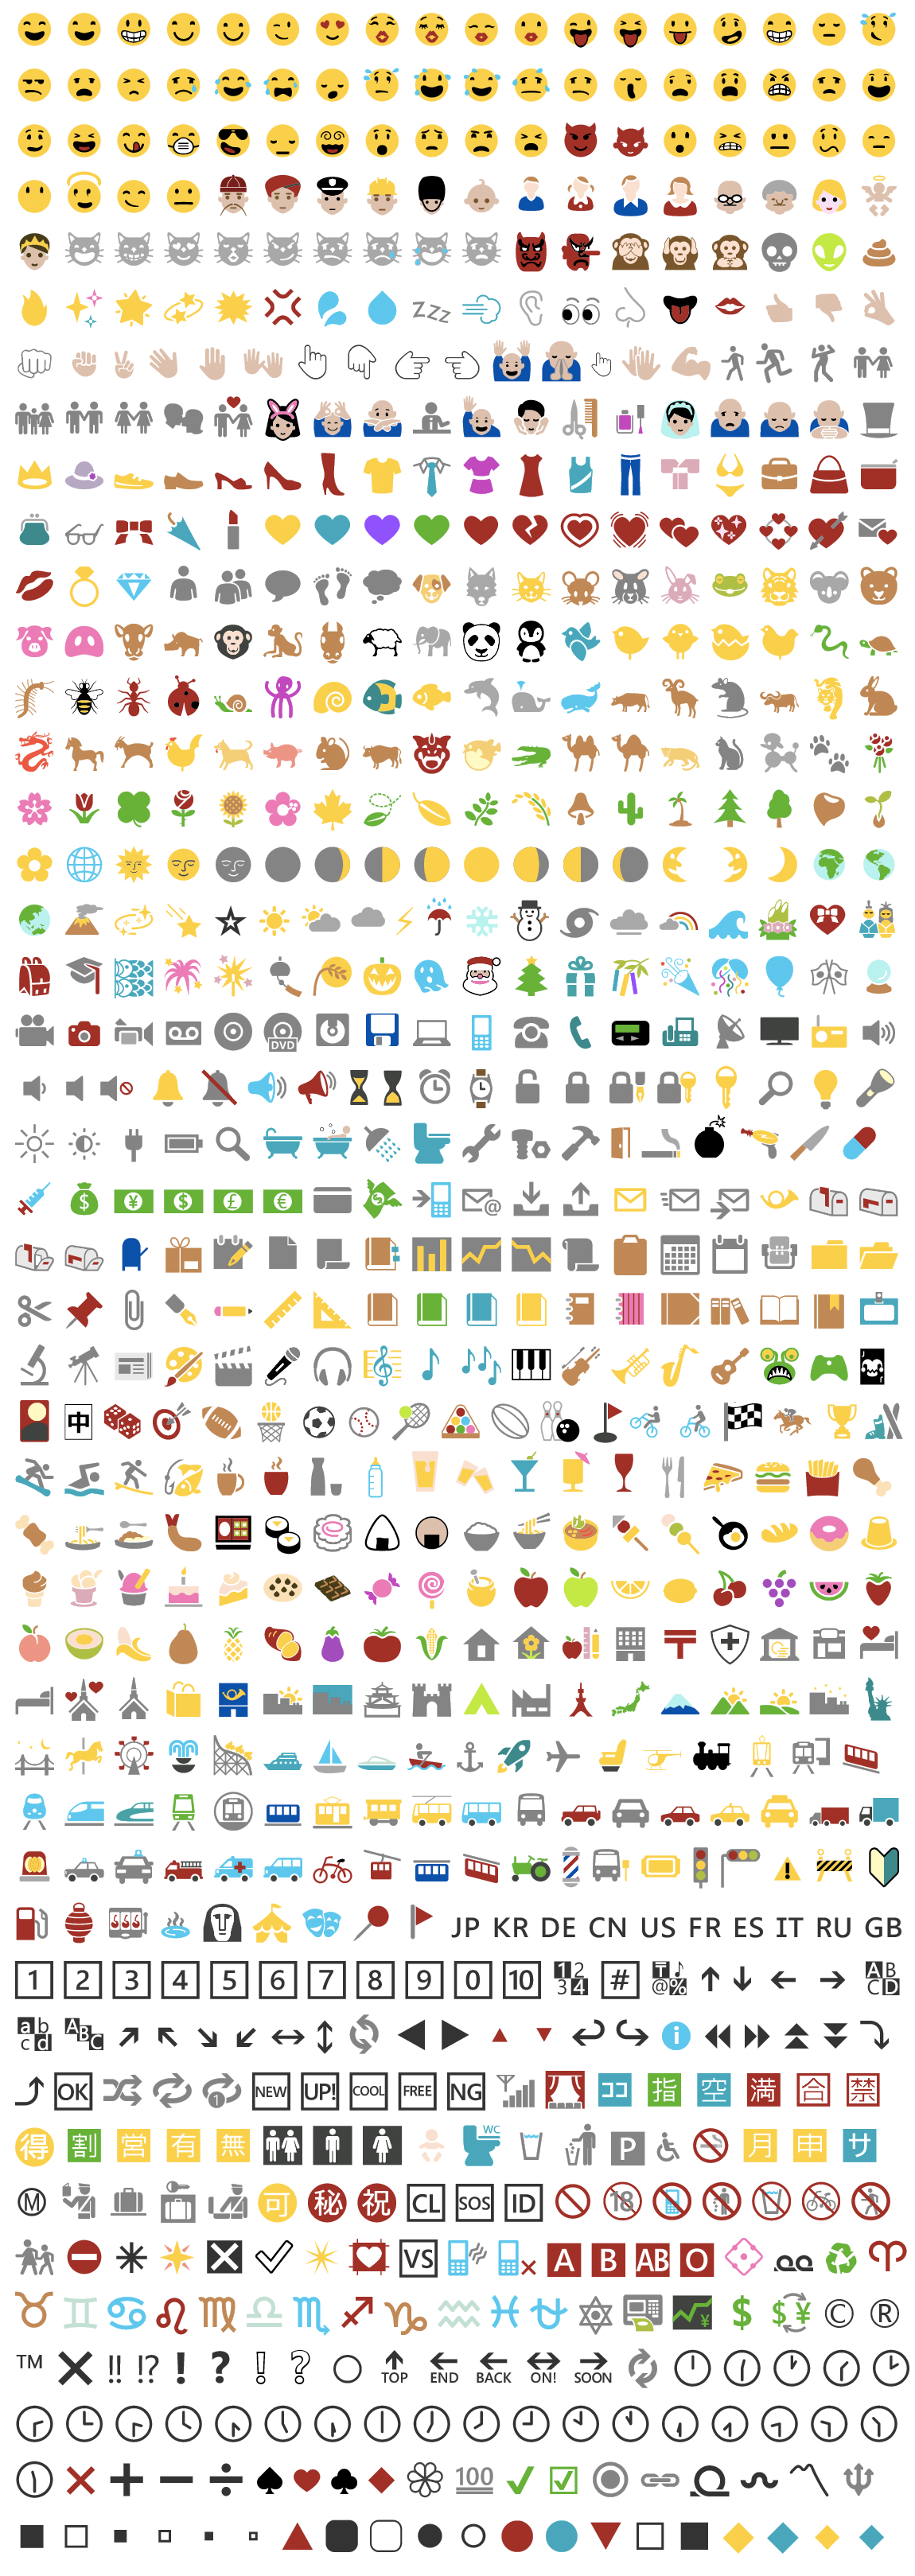 apple emoji font download